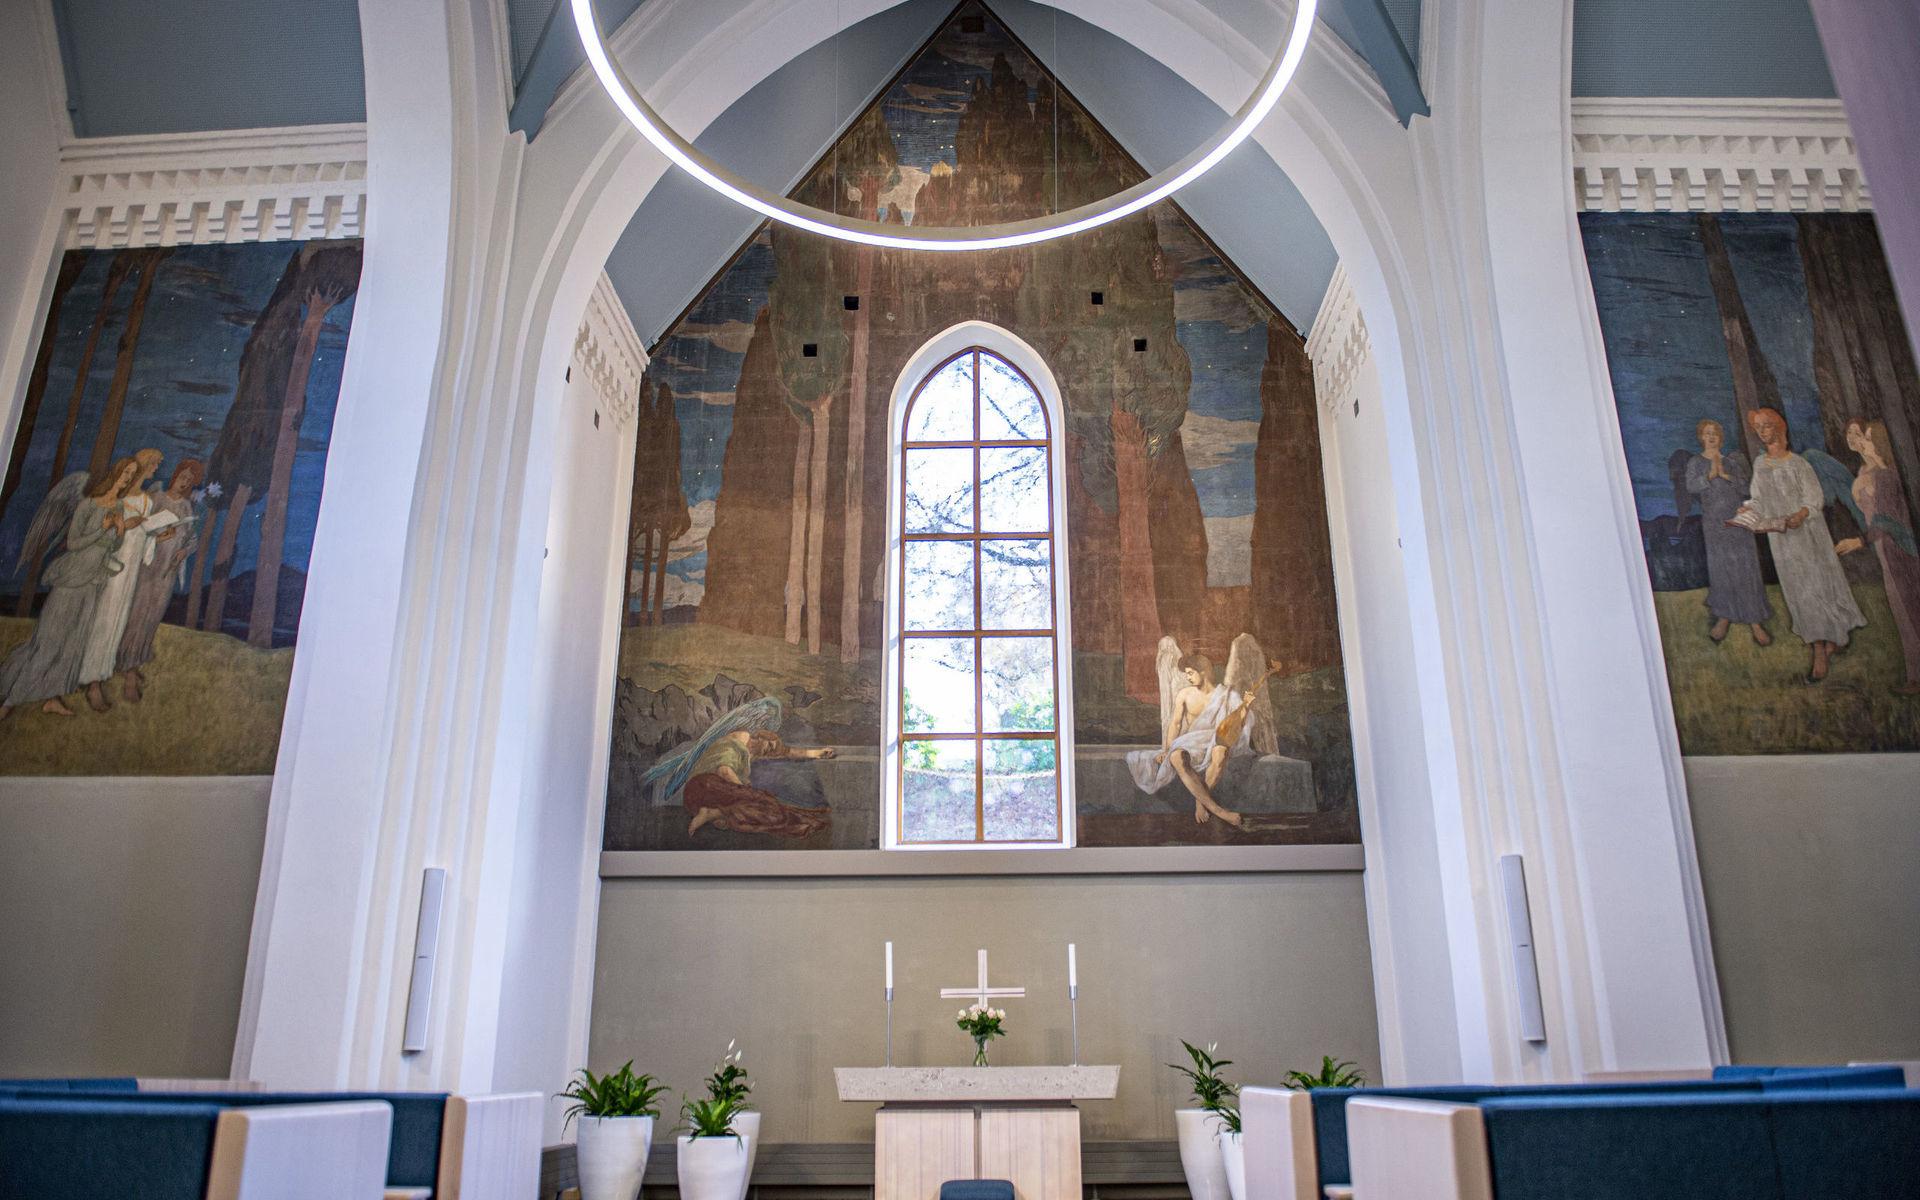 Kapellet bar på en hemlig konstskatt, nämligen 120 år gamla frescomålningar som upptäcktes under renoveringen.